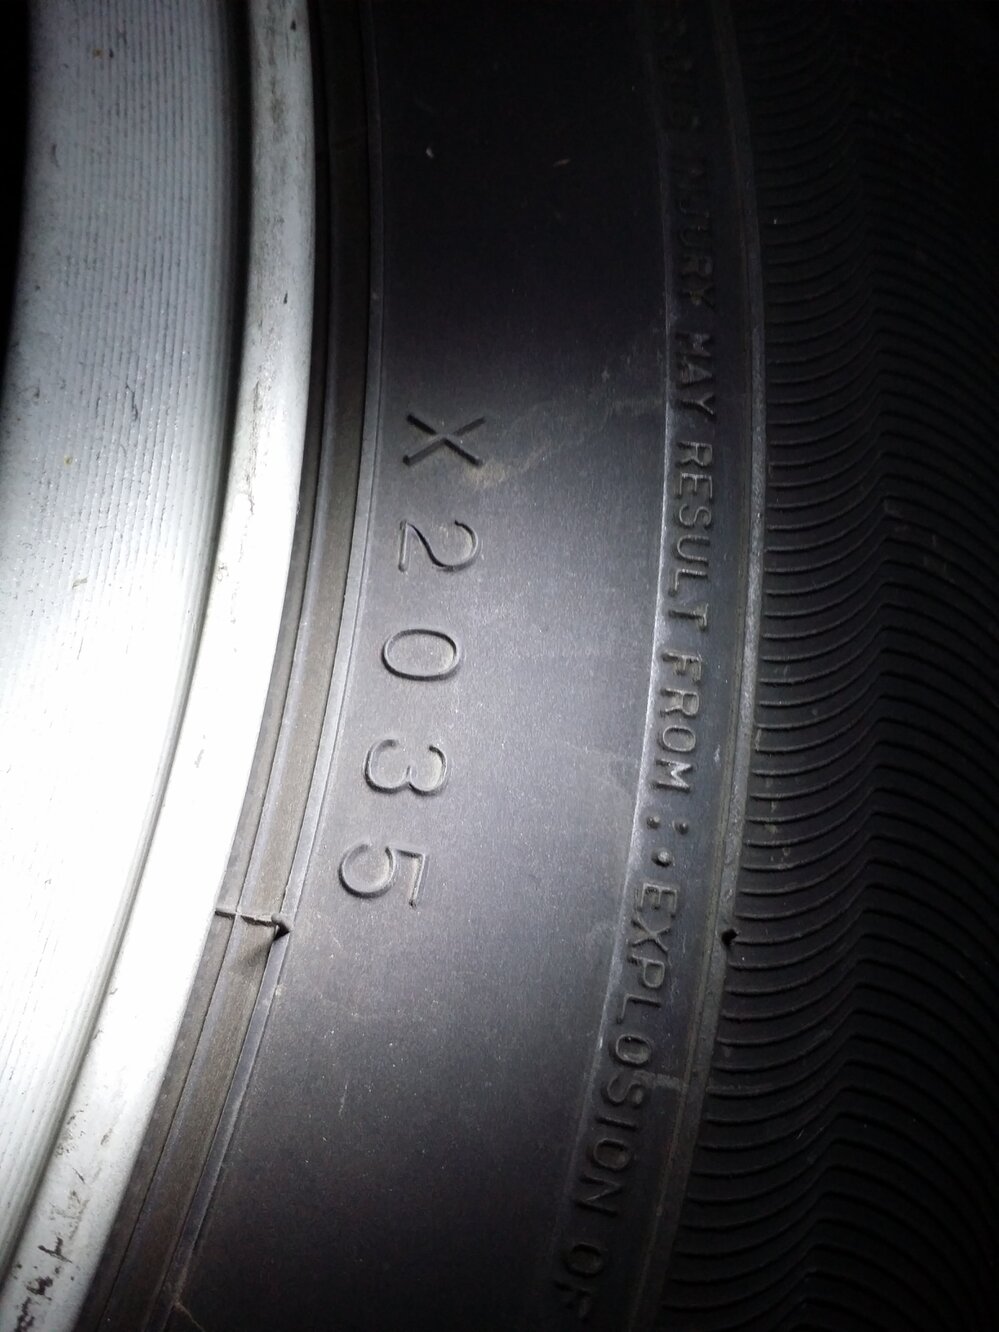 タイヤの製造年について ダンロップなのですが X2035 と４桁の数字が Yahoo 知恵袋